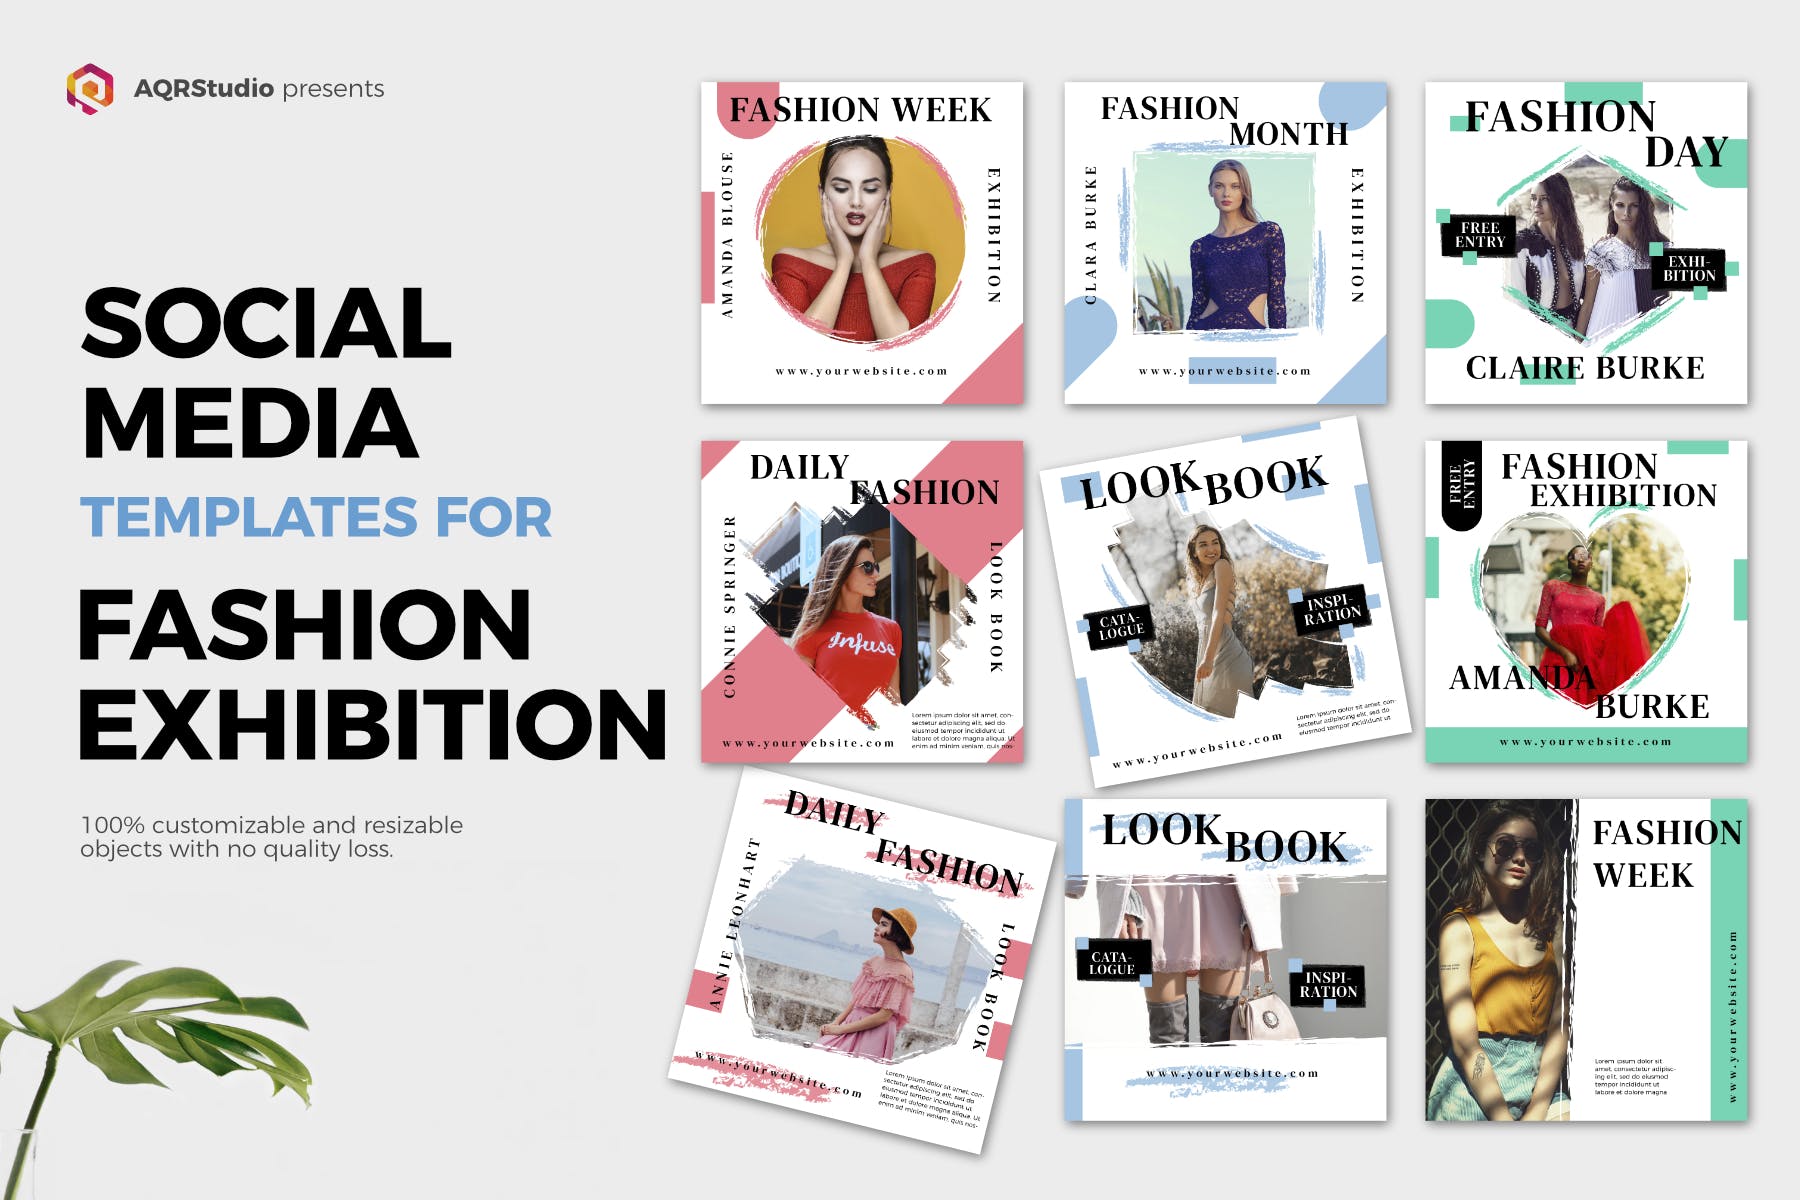 时尚品牌社交媒体推广设计模板第一素材精选素材 Fashion Exhibition Media Banners插图